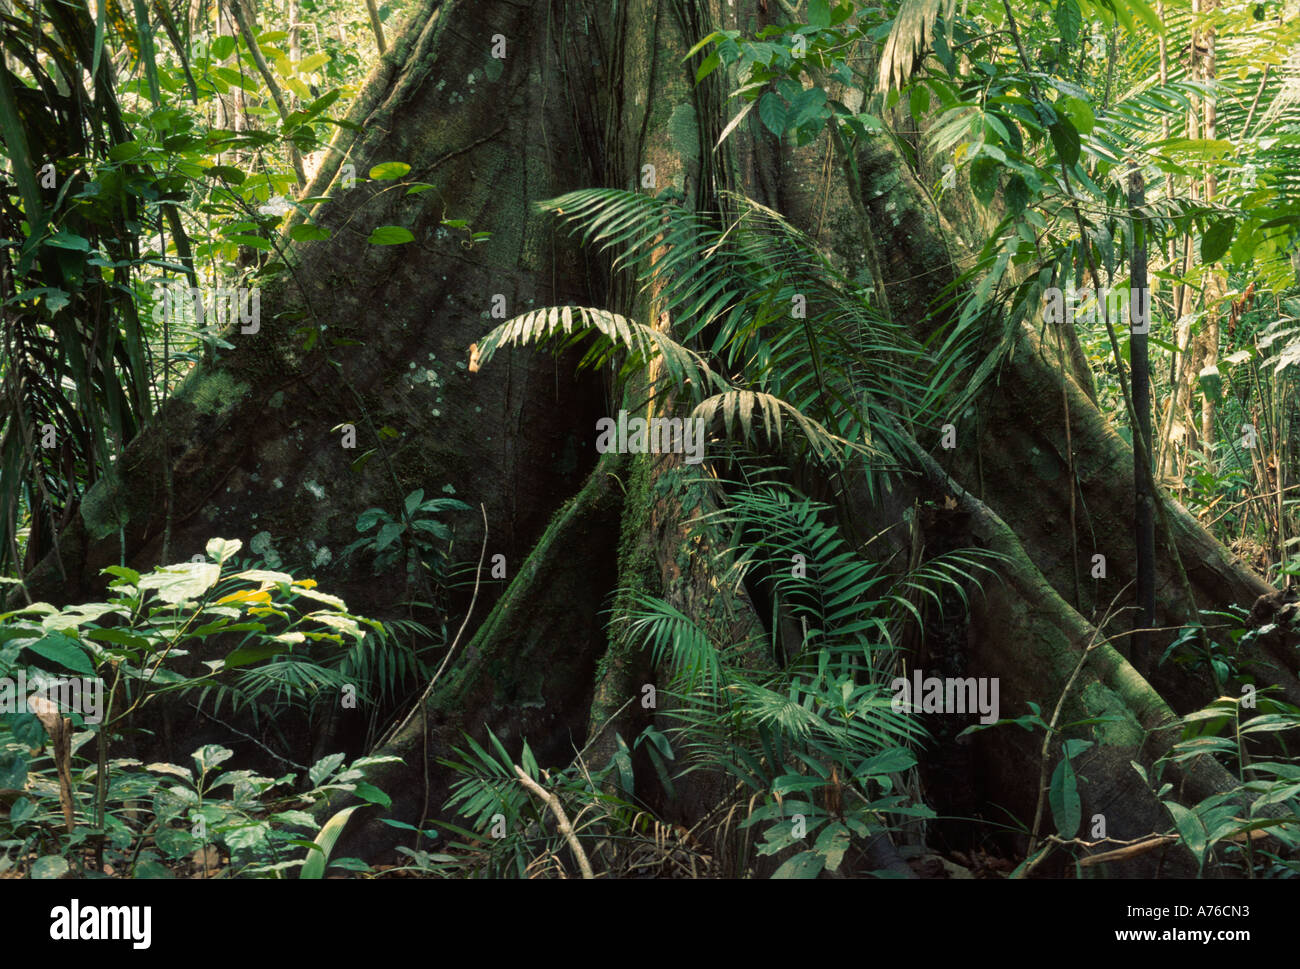 Sous-étage de la forêt amazonienne, l'arbre avec les racines contrefort Banque D'Images